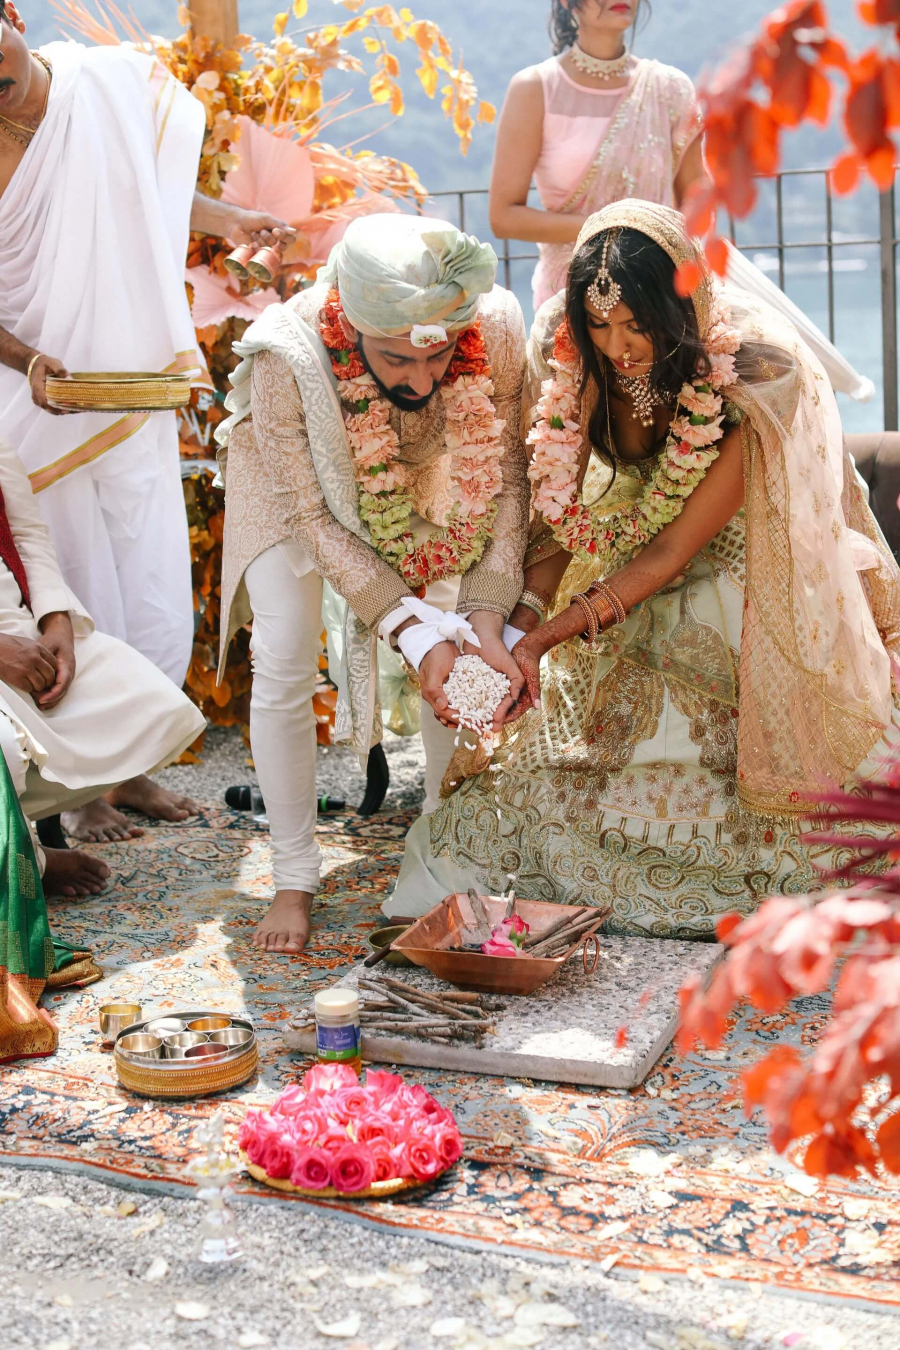  fogo-sagrado-casamento-indiano